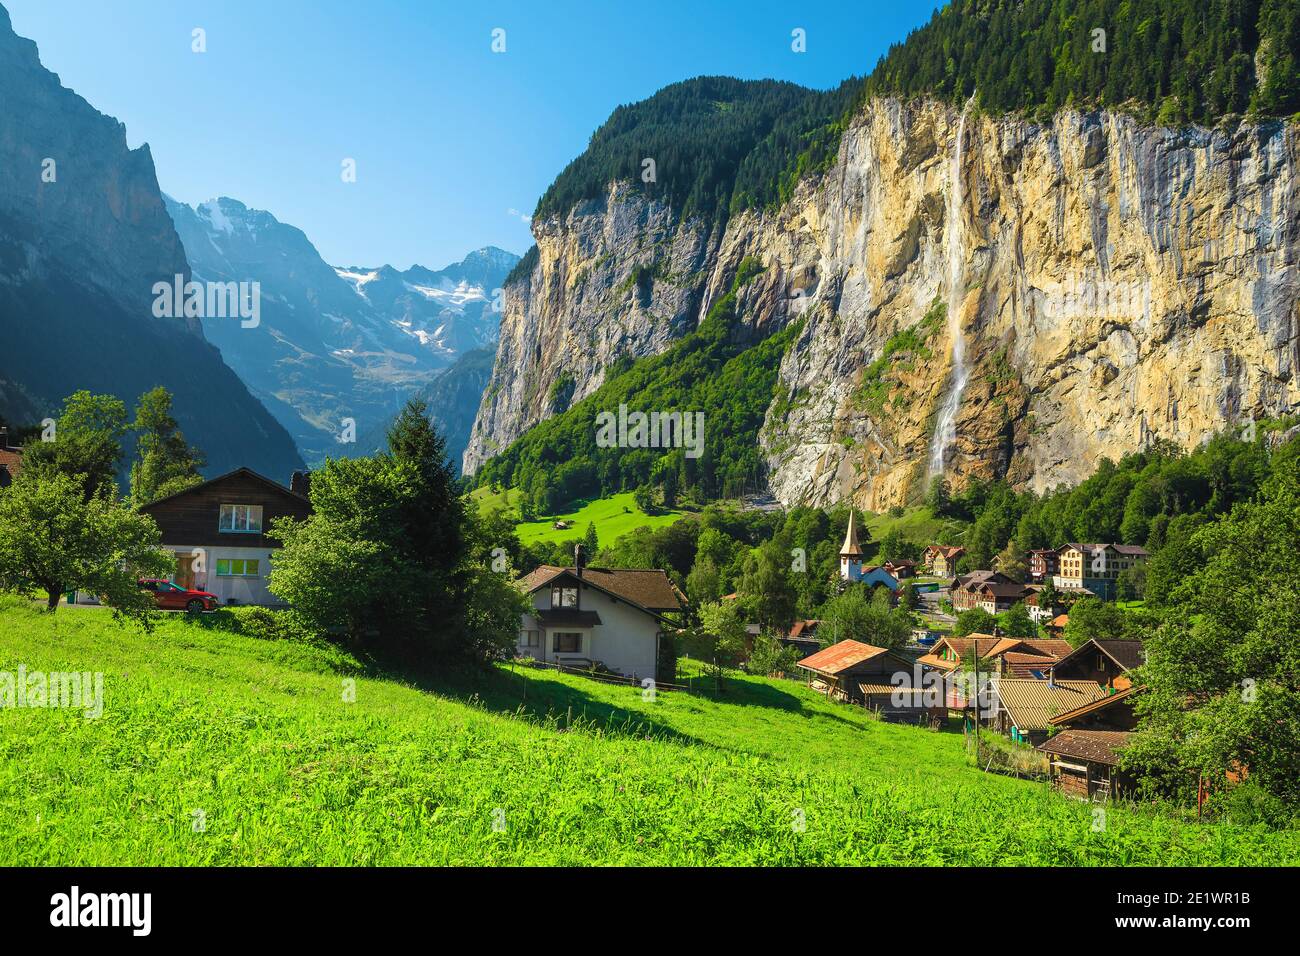 Superbes lieux alpins d'été avec une vallée profonde et des cascades. Vallée de Lauterbrunnen et célèbre station balnéaire, Oberland bernois, Suisse, Europe Banque D'Images